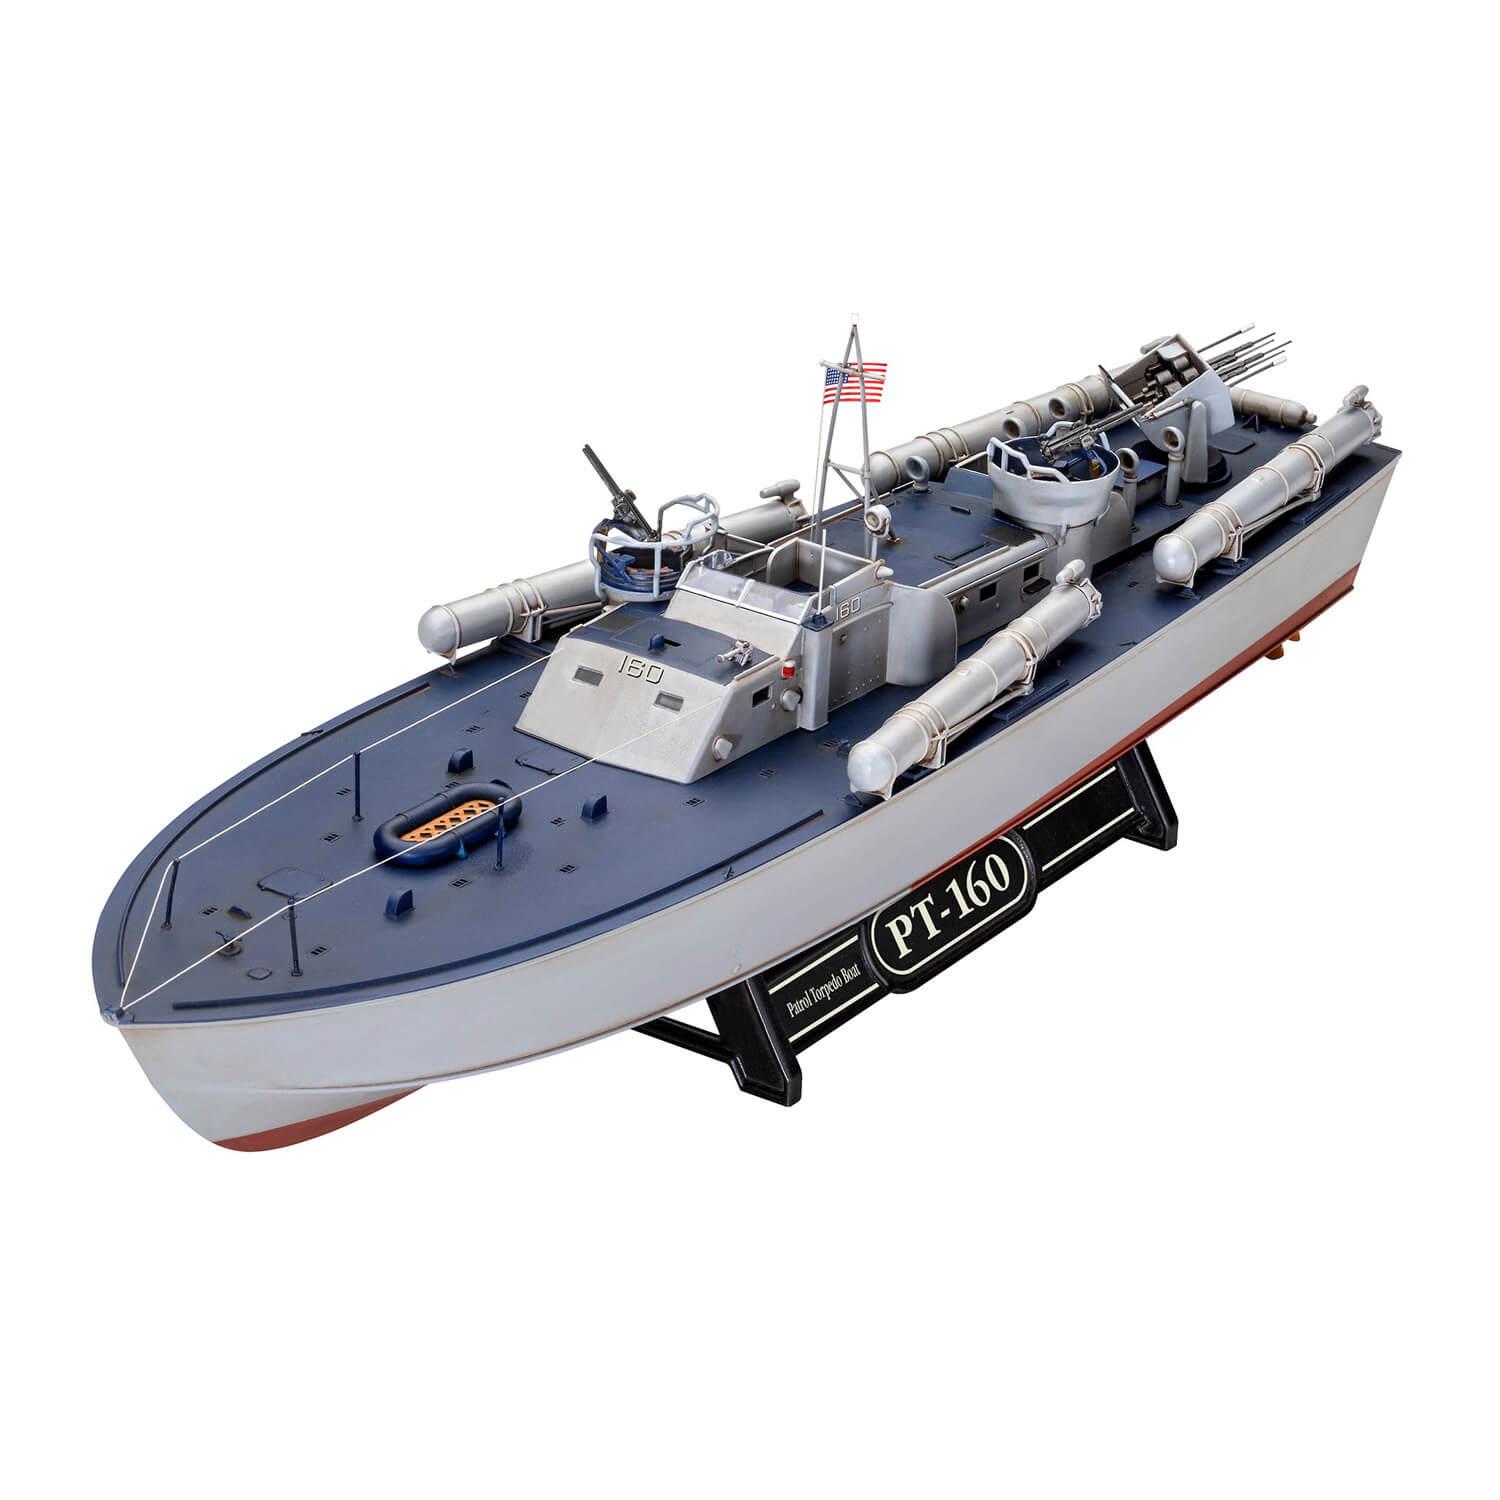 Maquette bateau : Model Set : Patrouilleur lance-torpilles PT-559 / PT-160